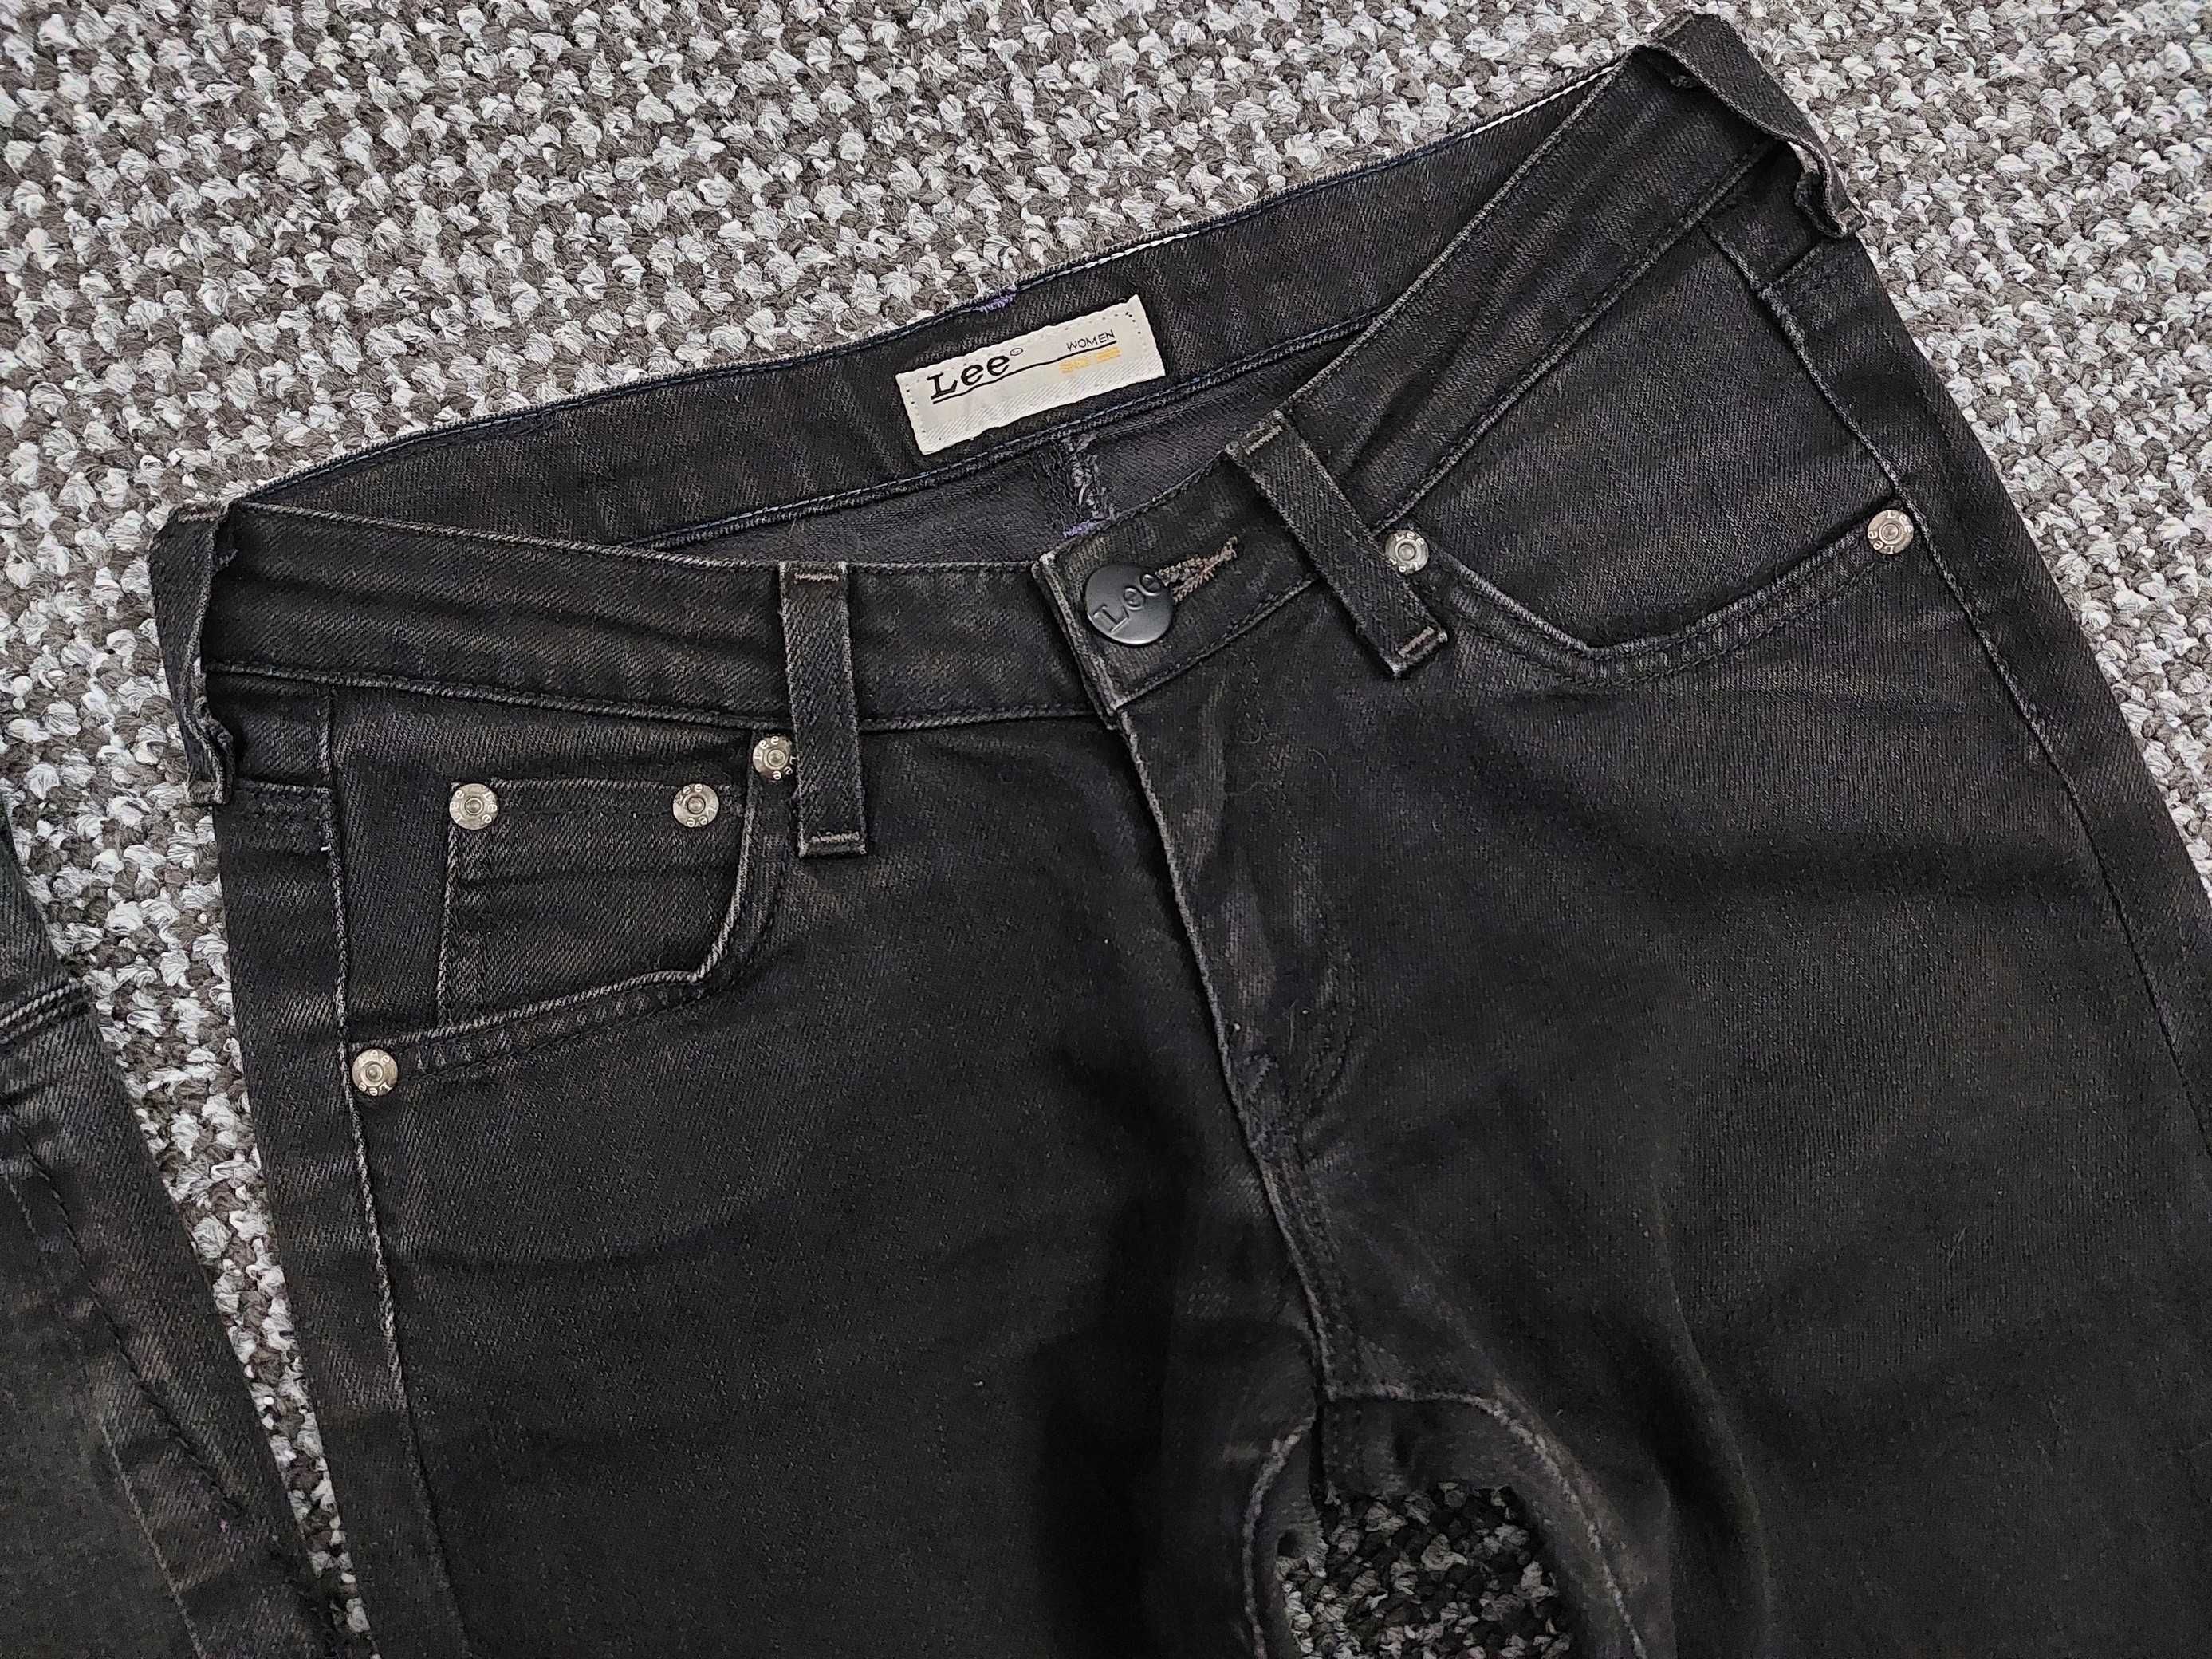 Spodnie damskie jeans Lee, H&M - 3 sztuki W26